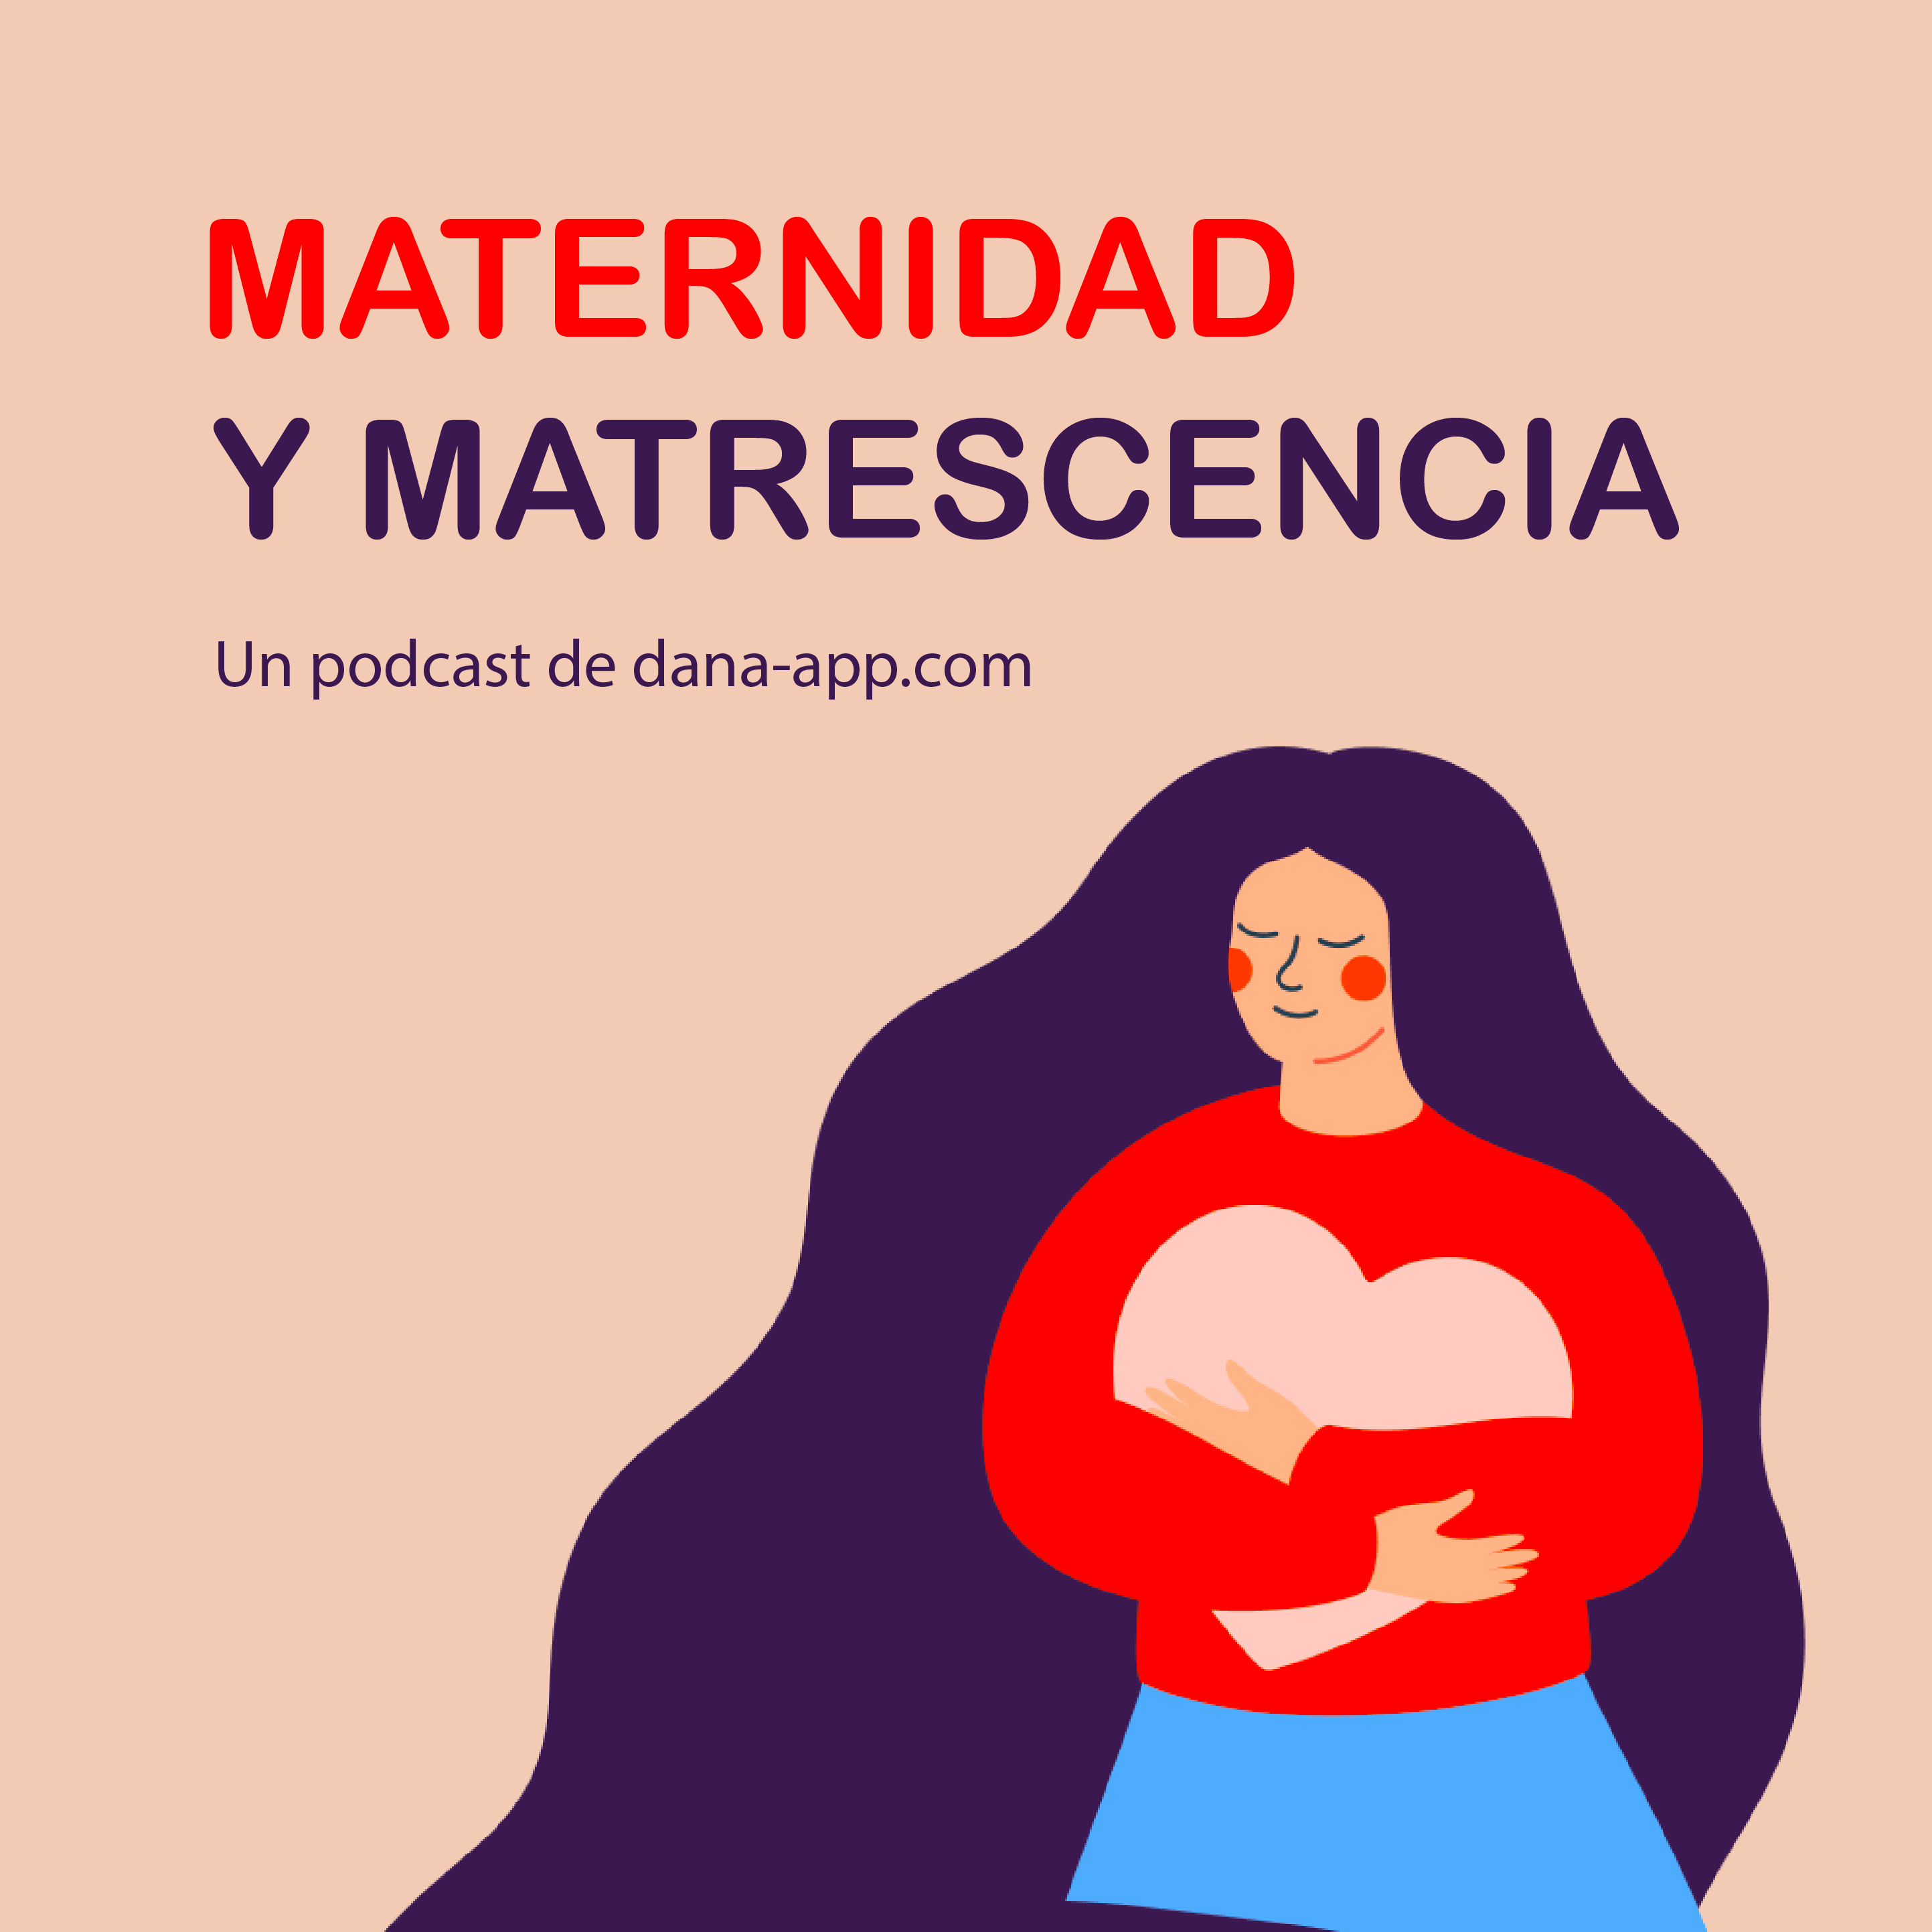 Maternidad y Matrescencia: un podcast de dana-app.com